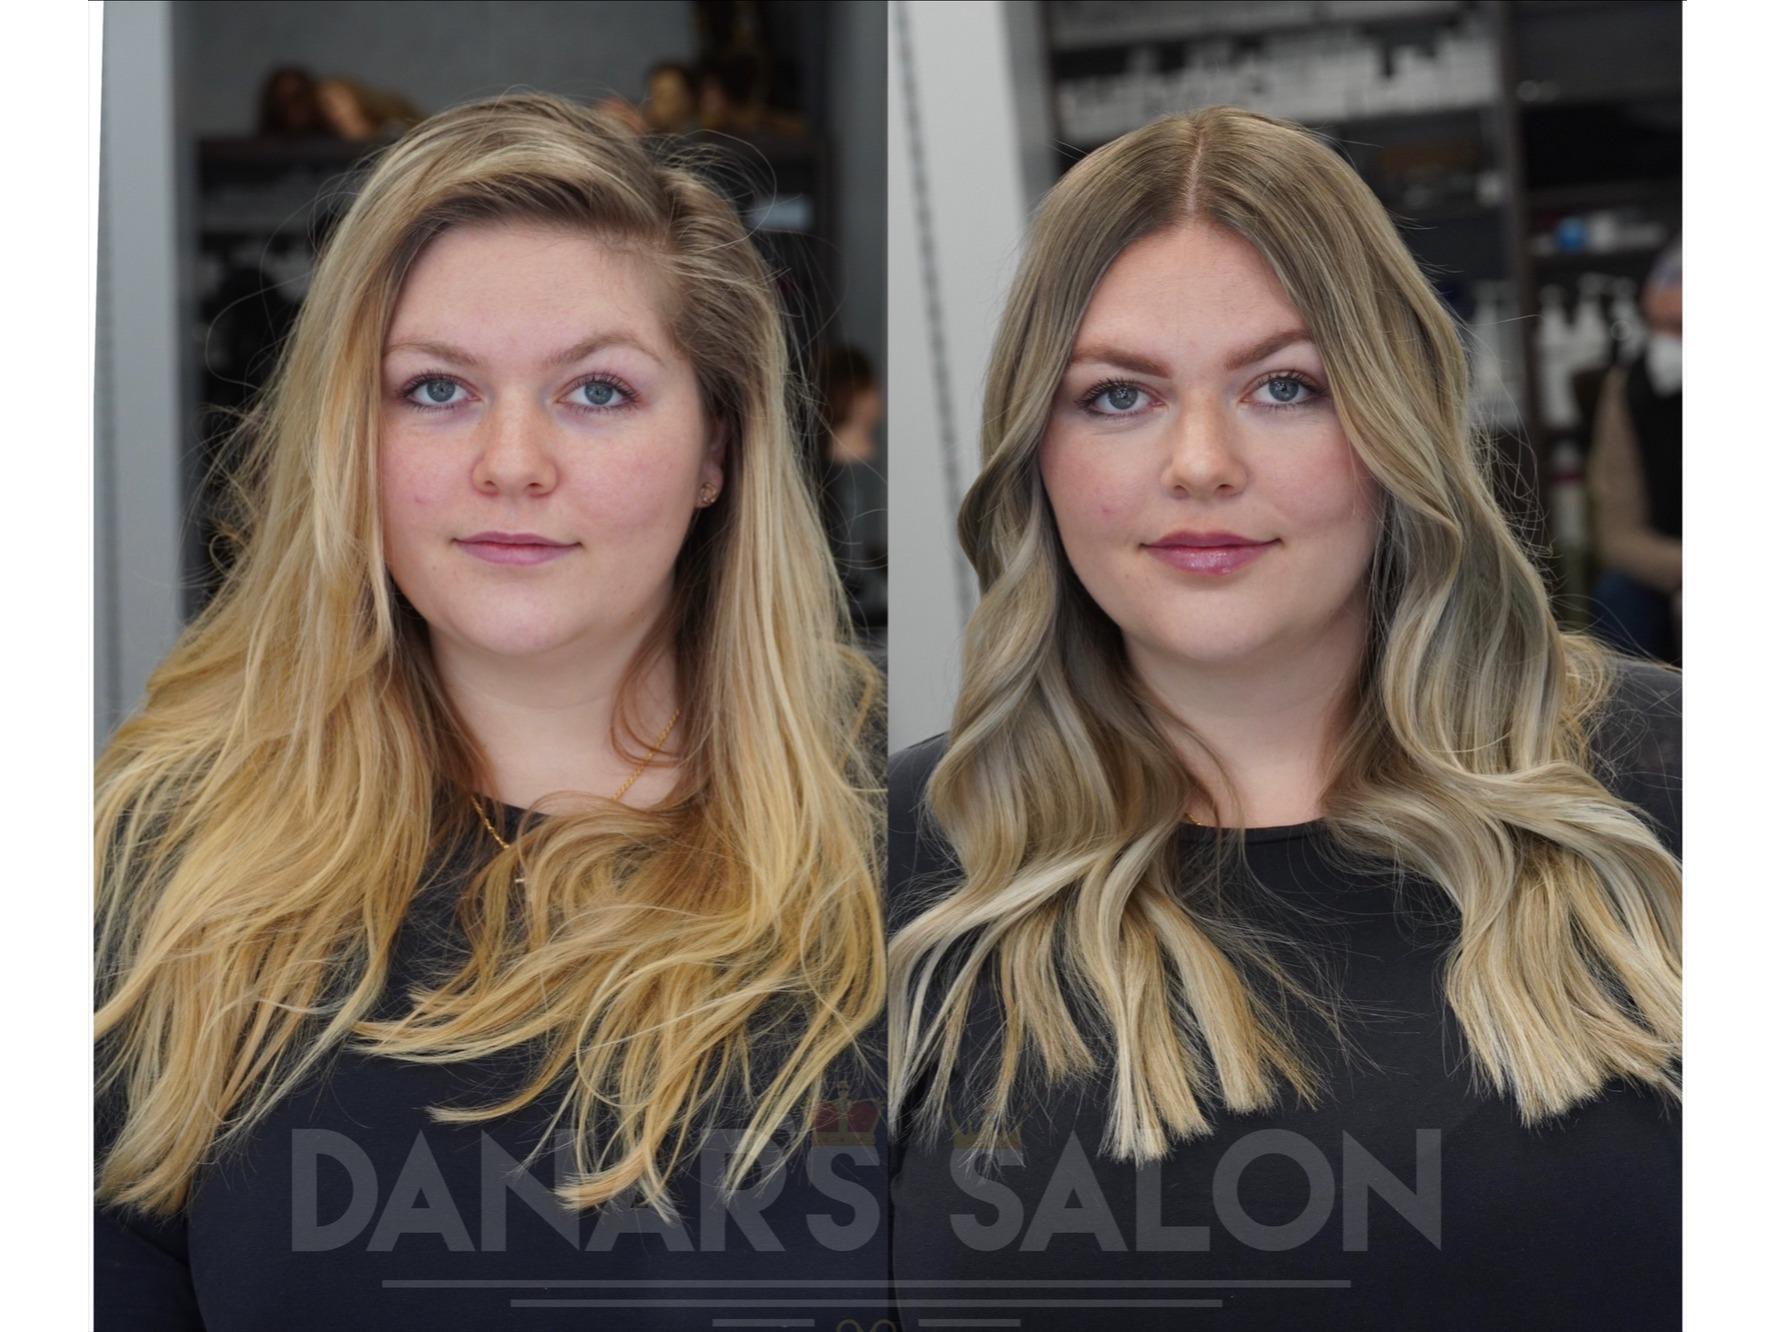 Danars Salon - Ihr Friseur München , Balayage & Colorations Experte , Top Hairstylist, Fürstenrieder Str 20 in München